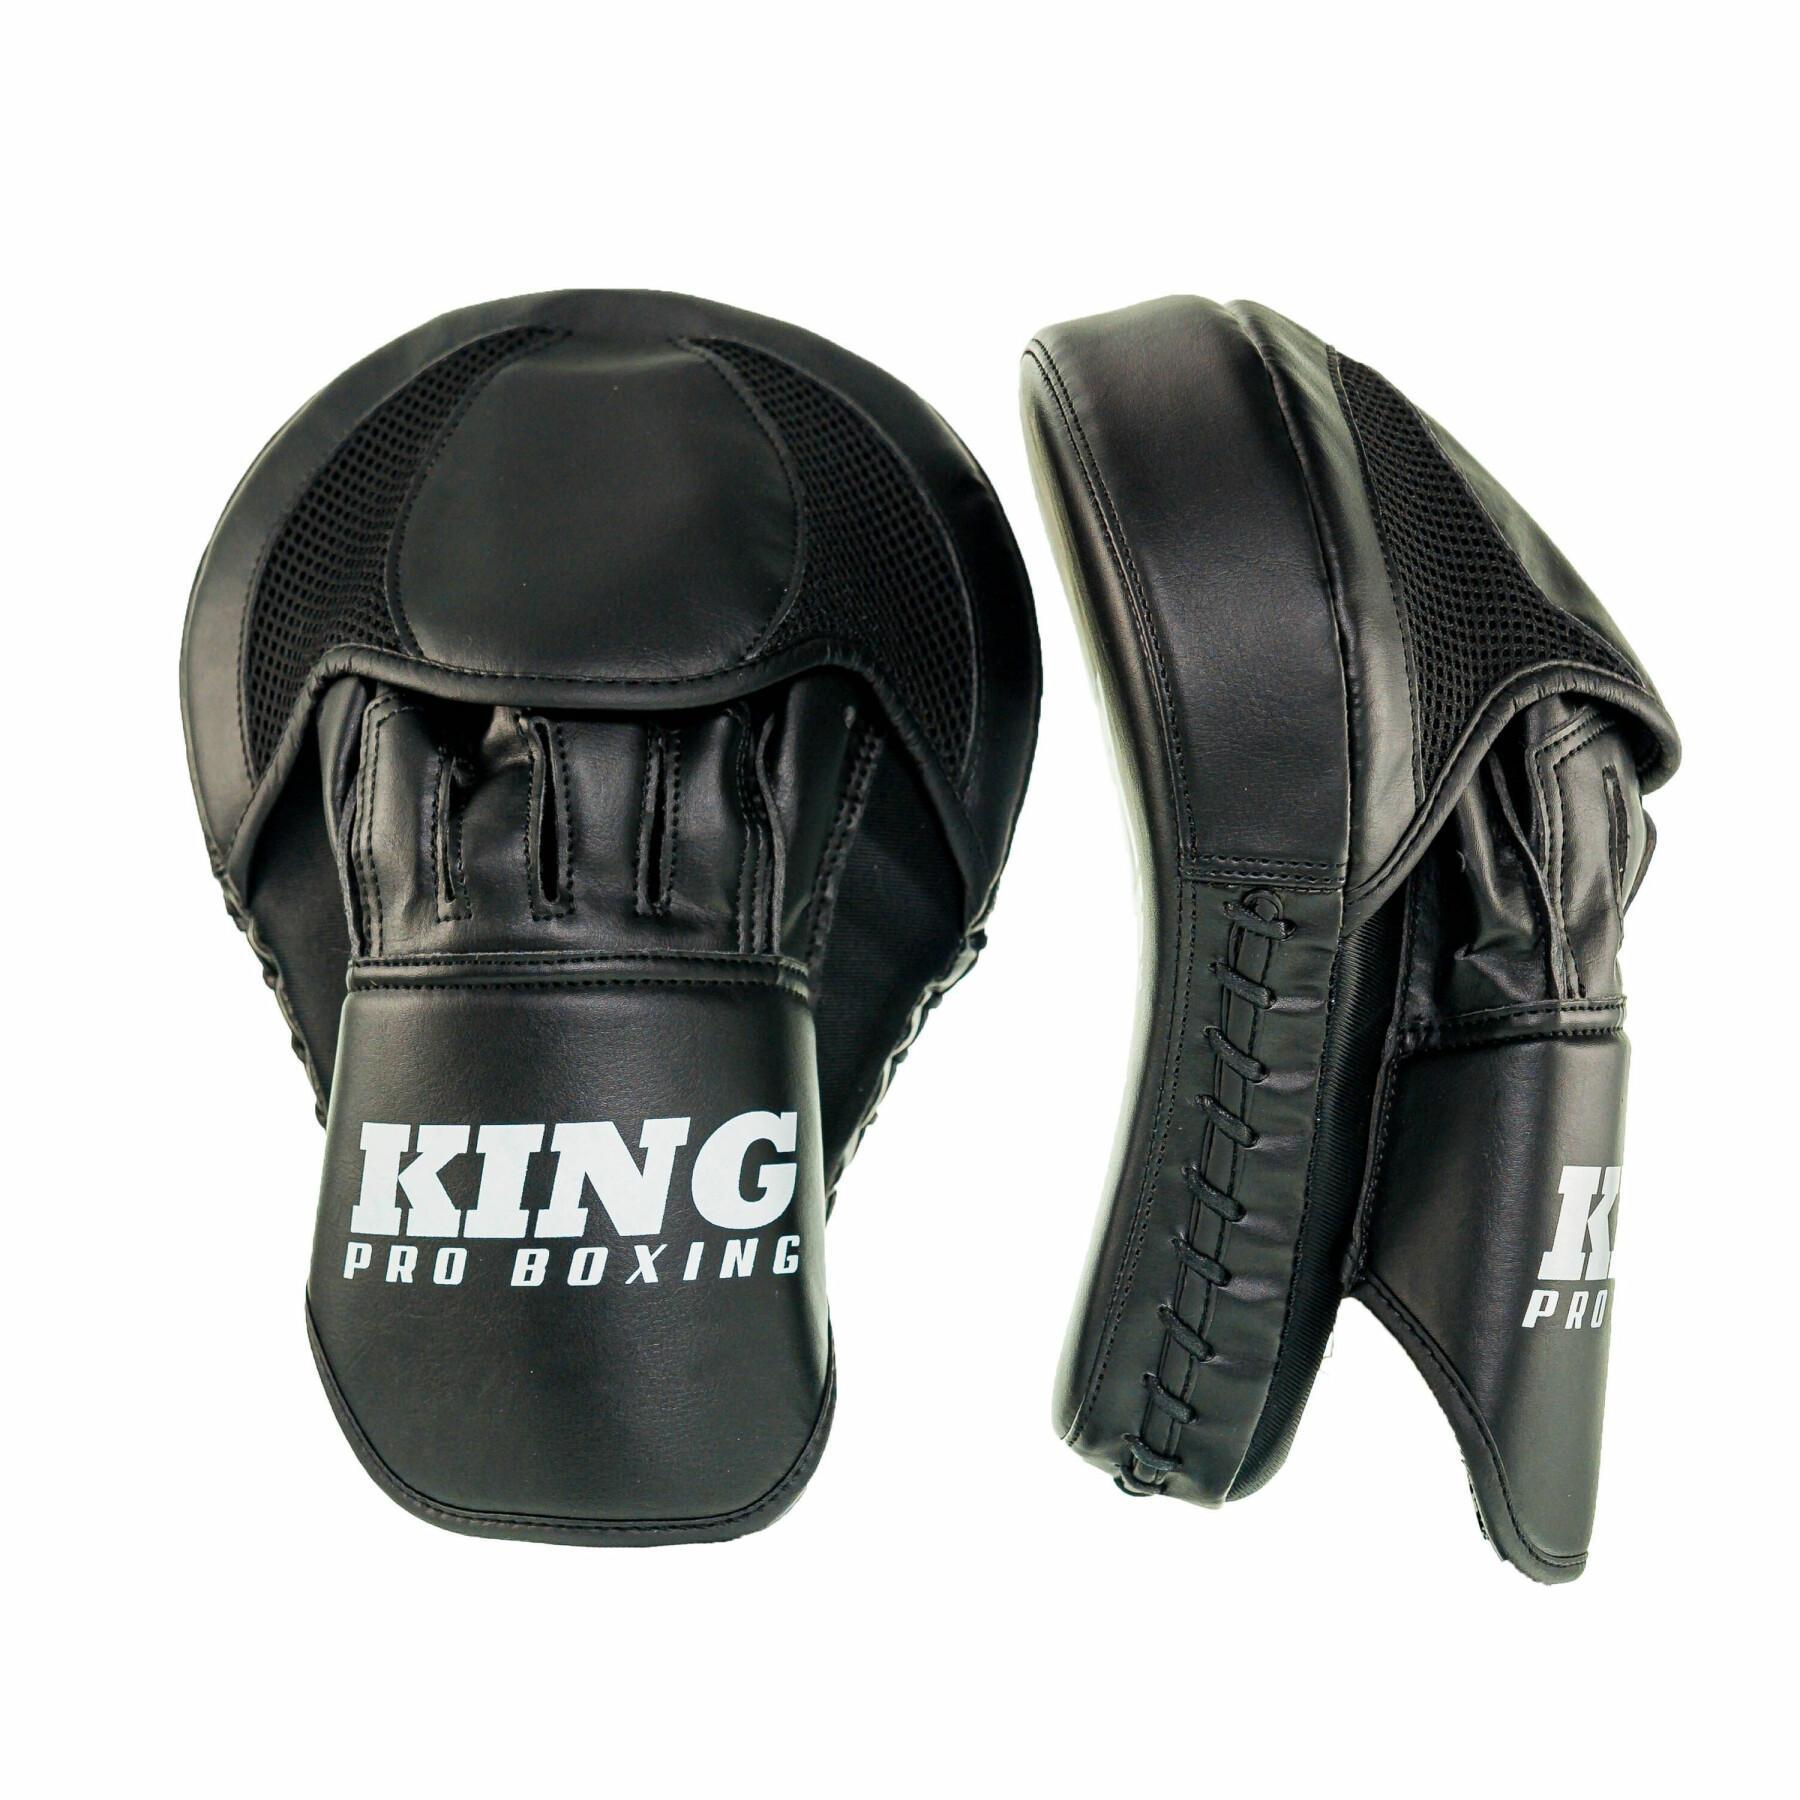 Bärenpfoten King Pro Boxing Kpb/Fm Revo